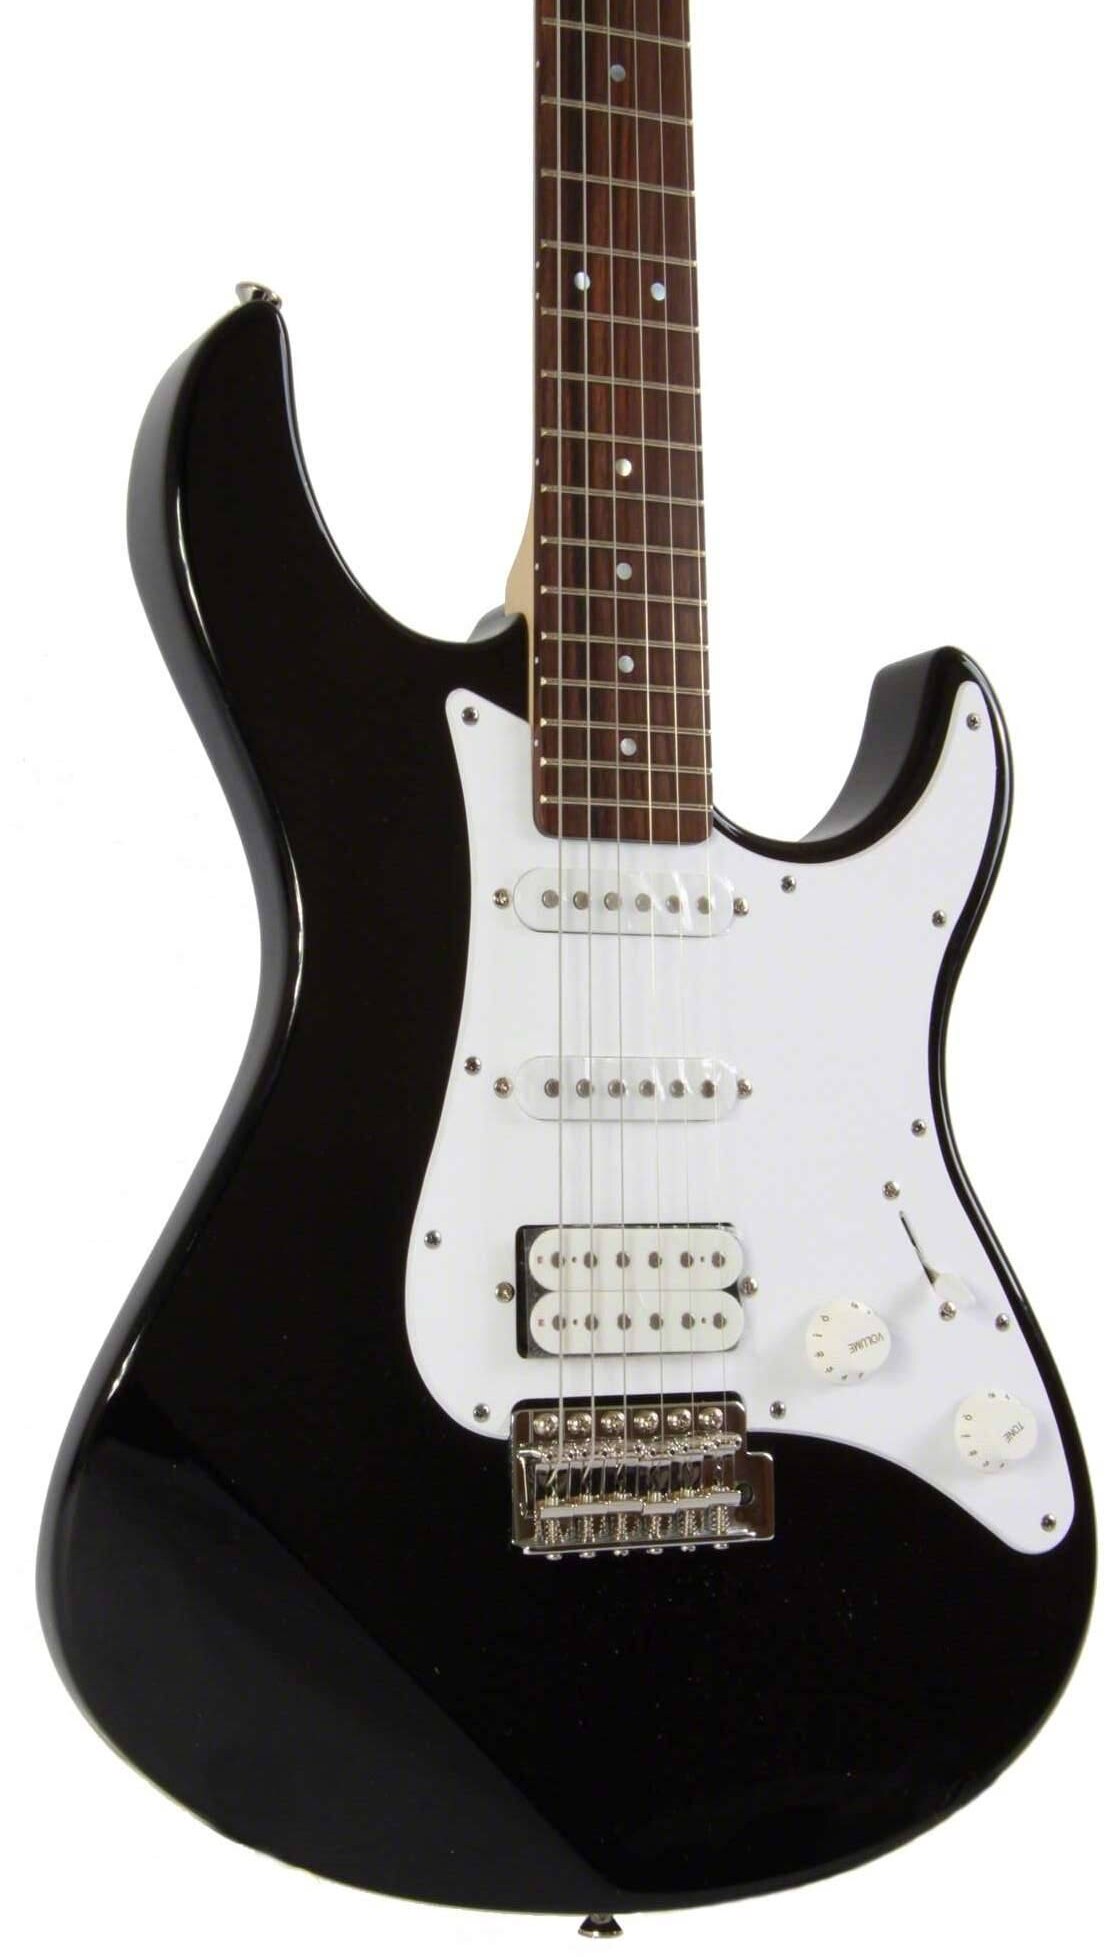 Đàn guitar điện Yamaha Pacifica 112J -màu đen-Hàng chính hãng